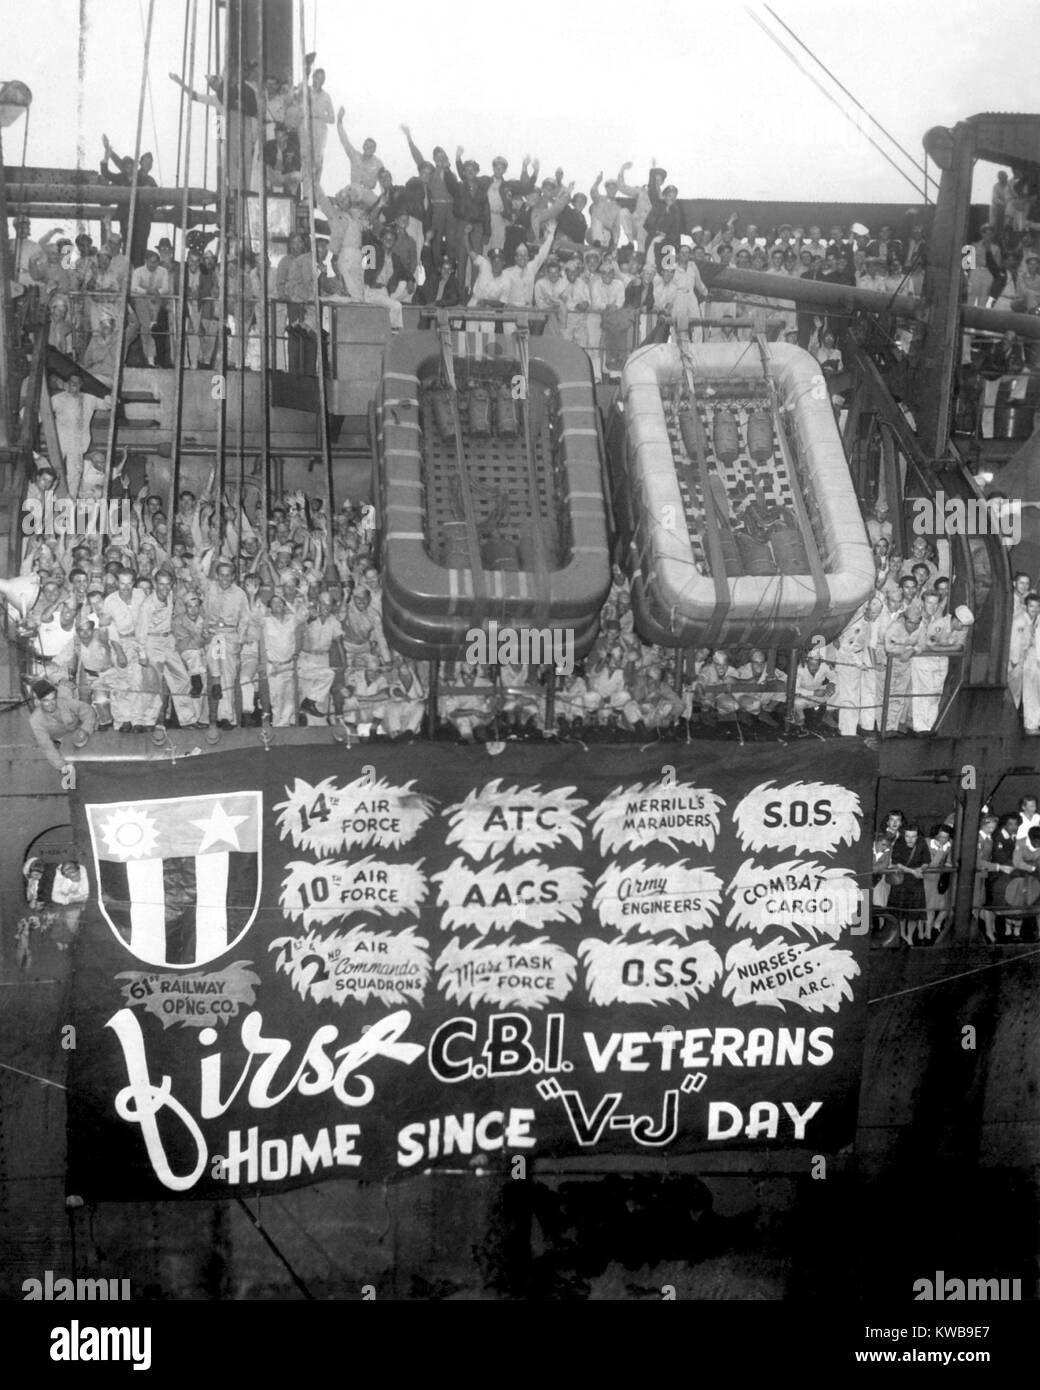 Stati Uniti i veterani del China-Burma-India campagne arriva a New York il 7 settembre 27, 1945. A bordo del trasporto dell'esercito generale A. W. Greely, gli uomini e le donne comprendevano i membri del Flying tigri e Merrill di predoni e altri abiti eroica. Guerra mondiale 2. (BSLOC 2014 10 277) Foto Stock